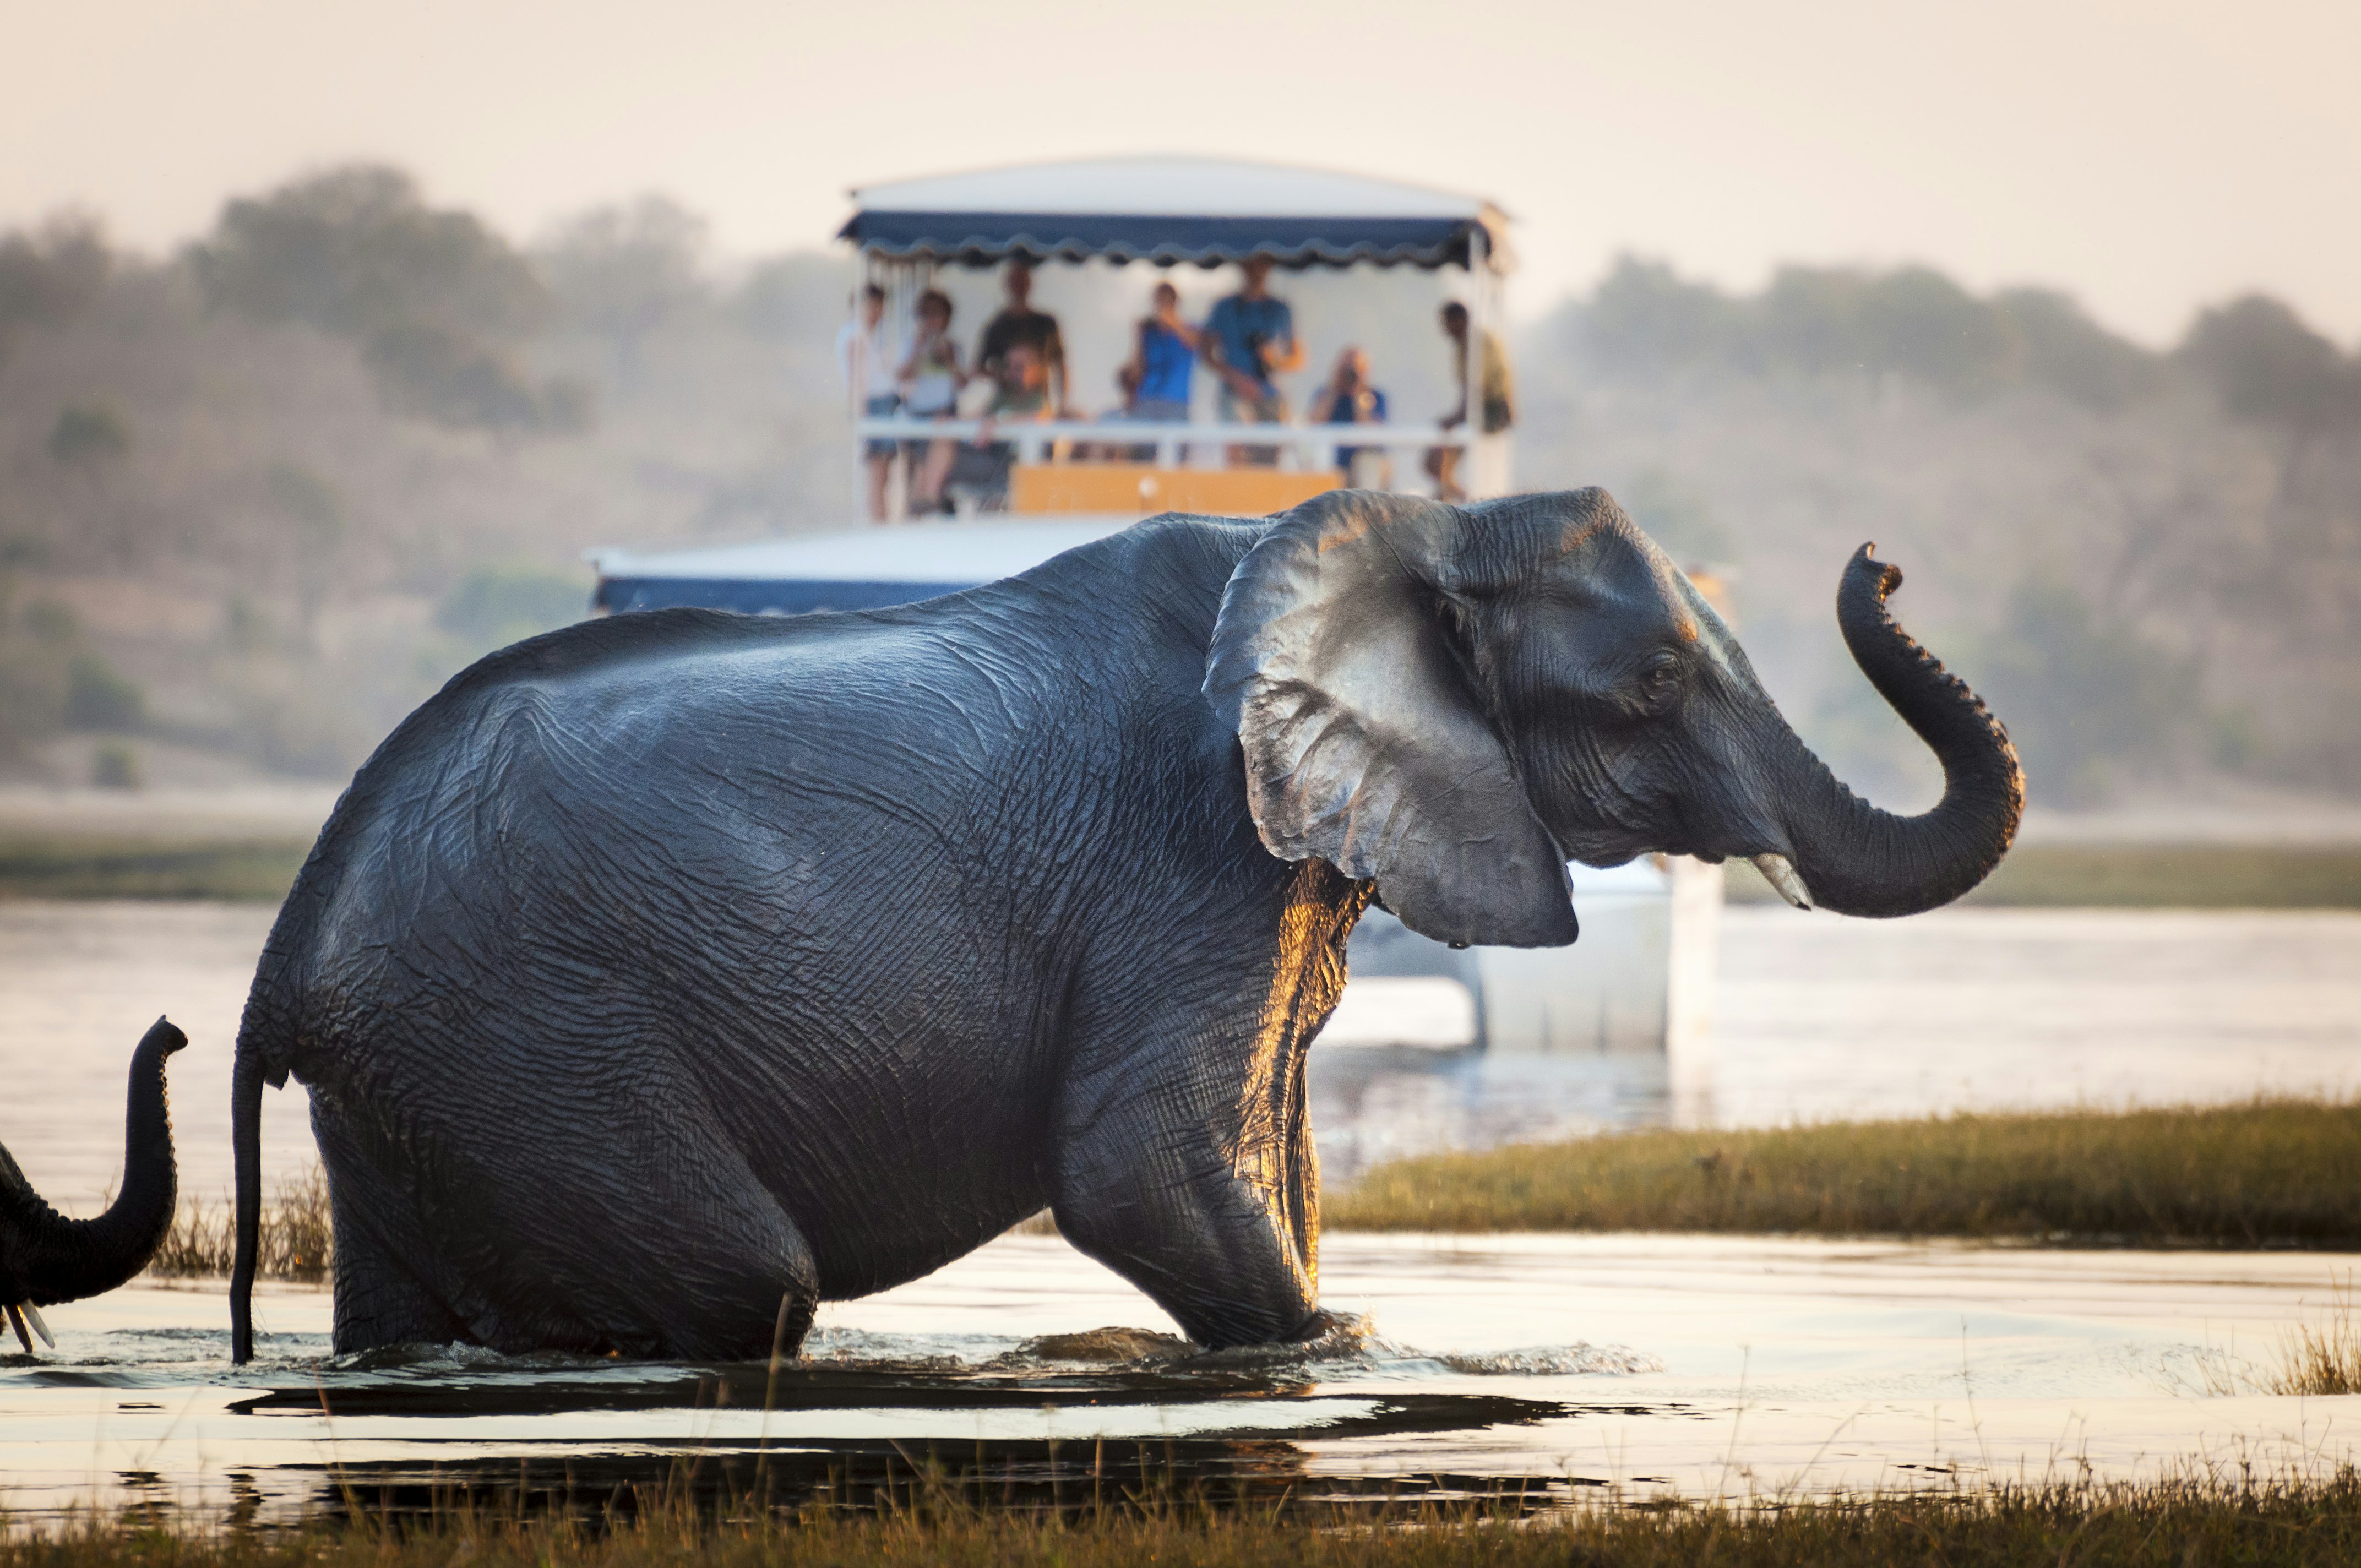 Turistas observam um elefante atravessando um rio no Parque Nacional de Chobe, Botsuana